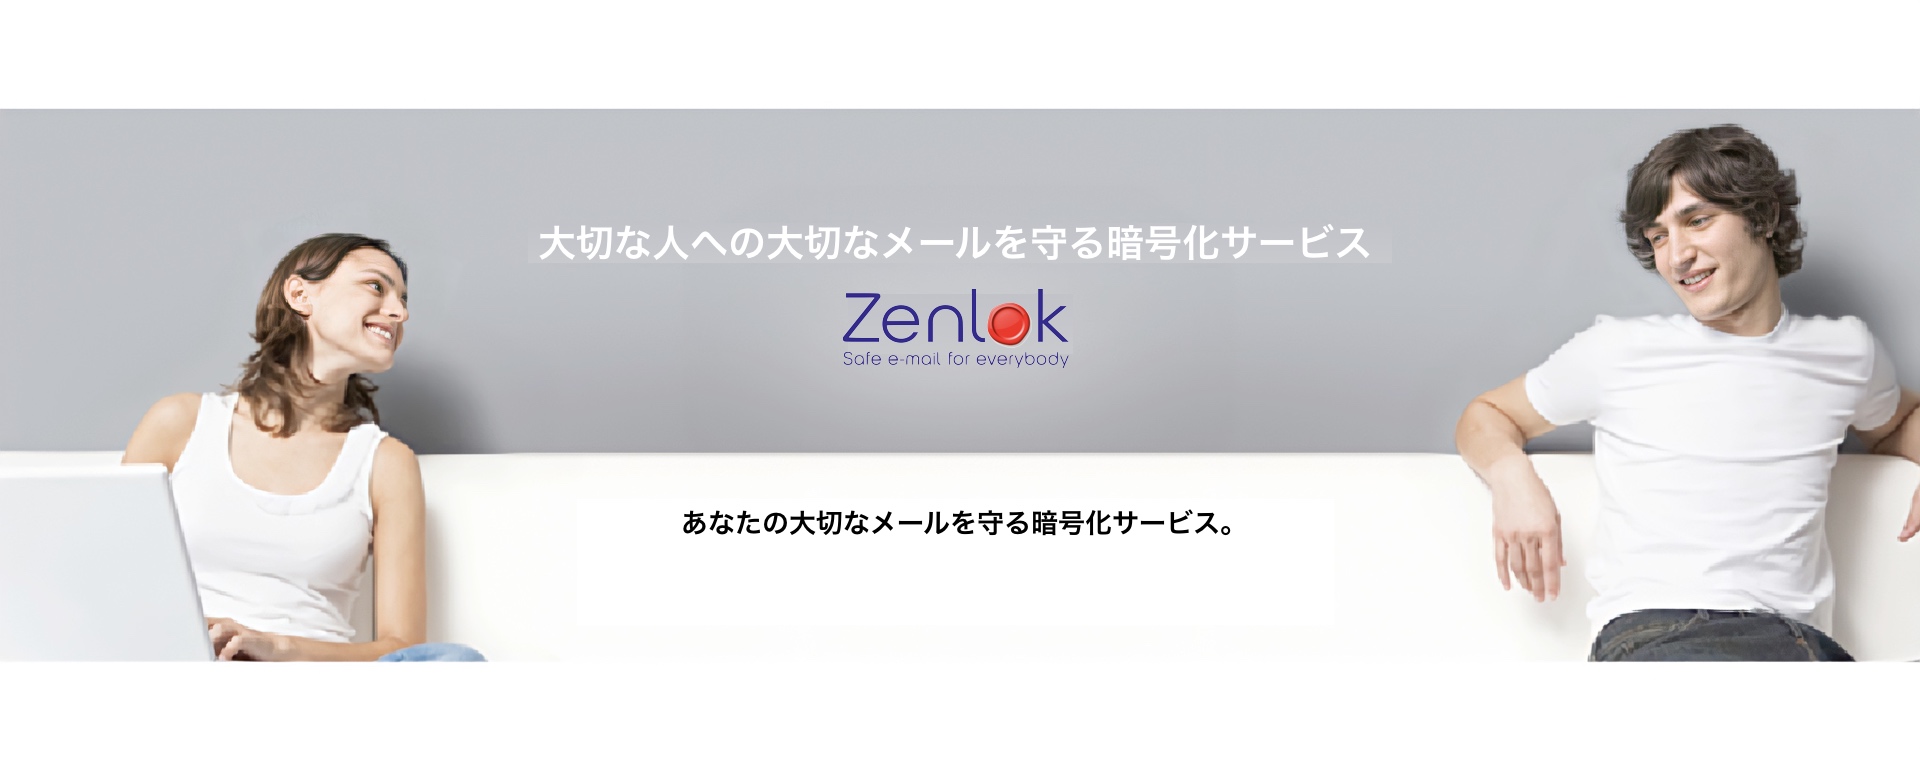 Zenlok(TM)